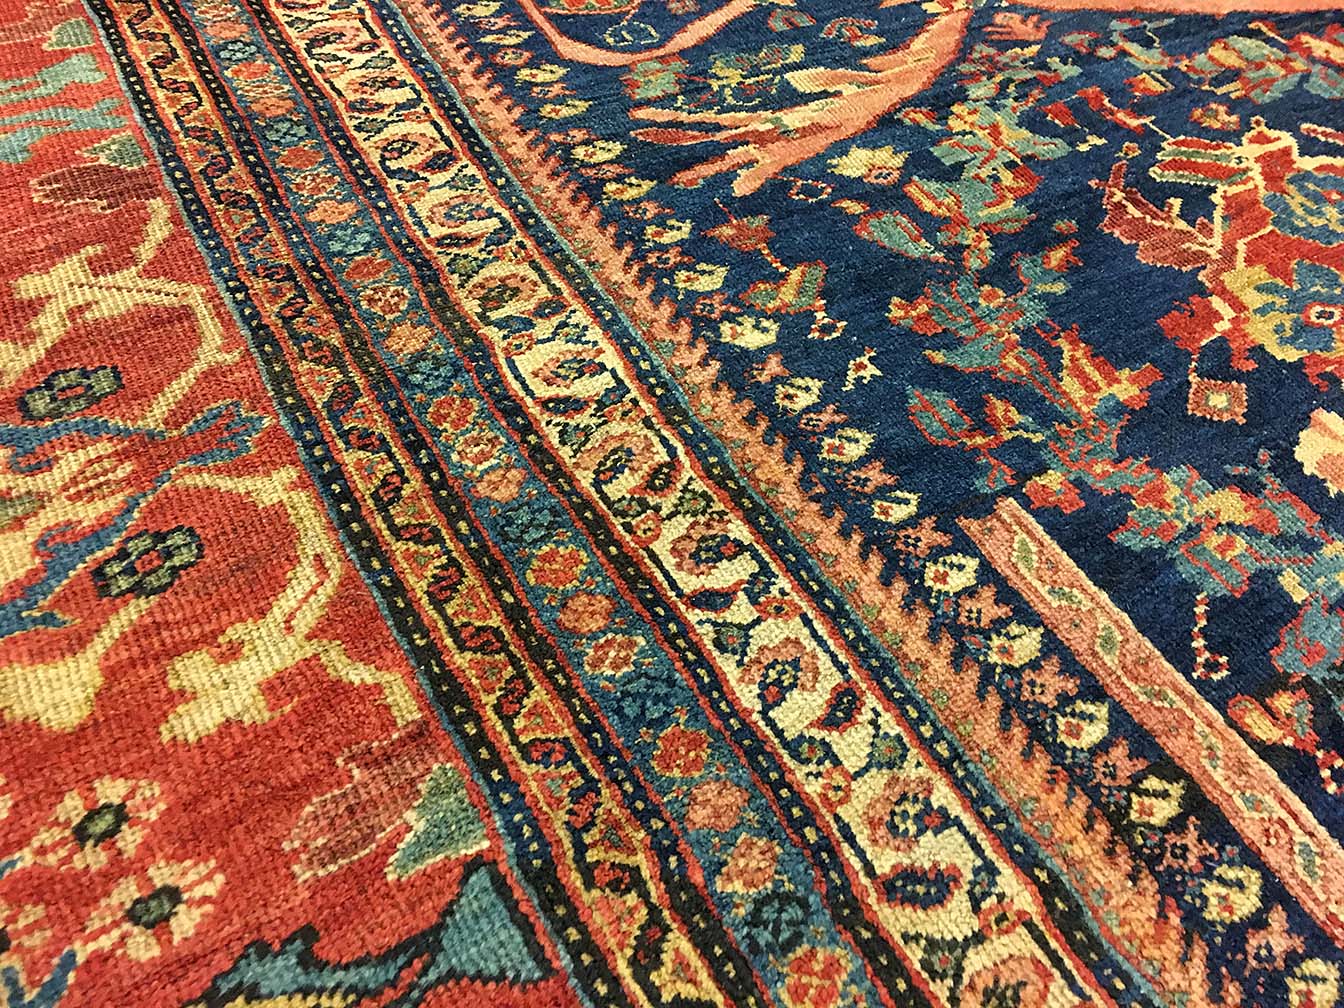 Antique sultan abad Carpet - # 53728